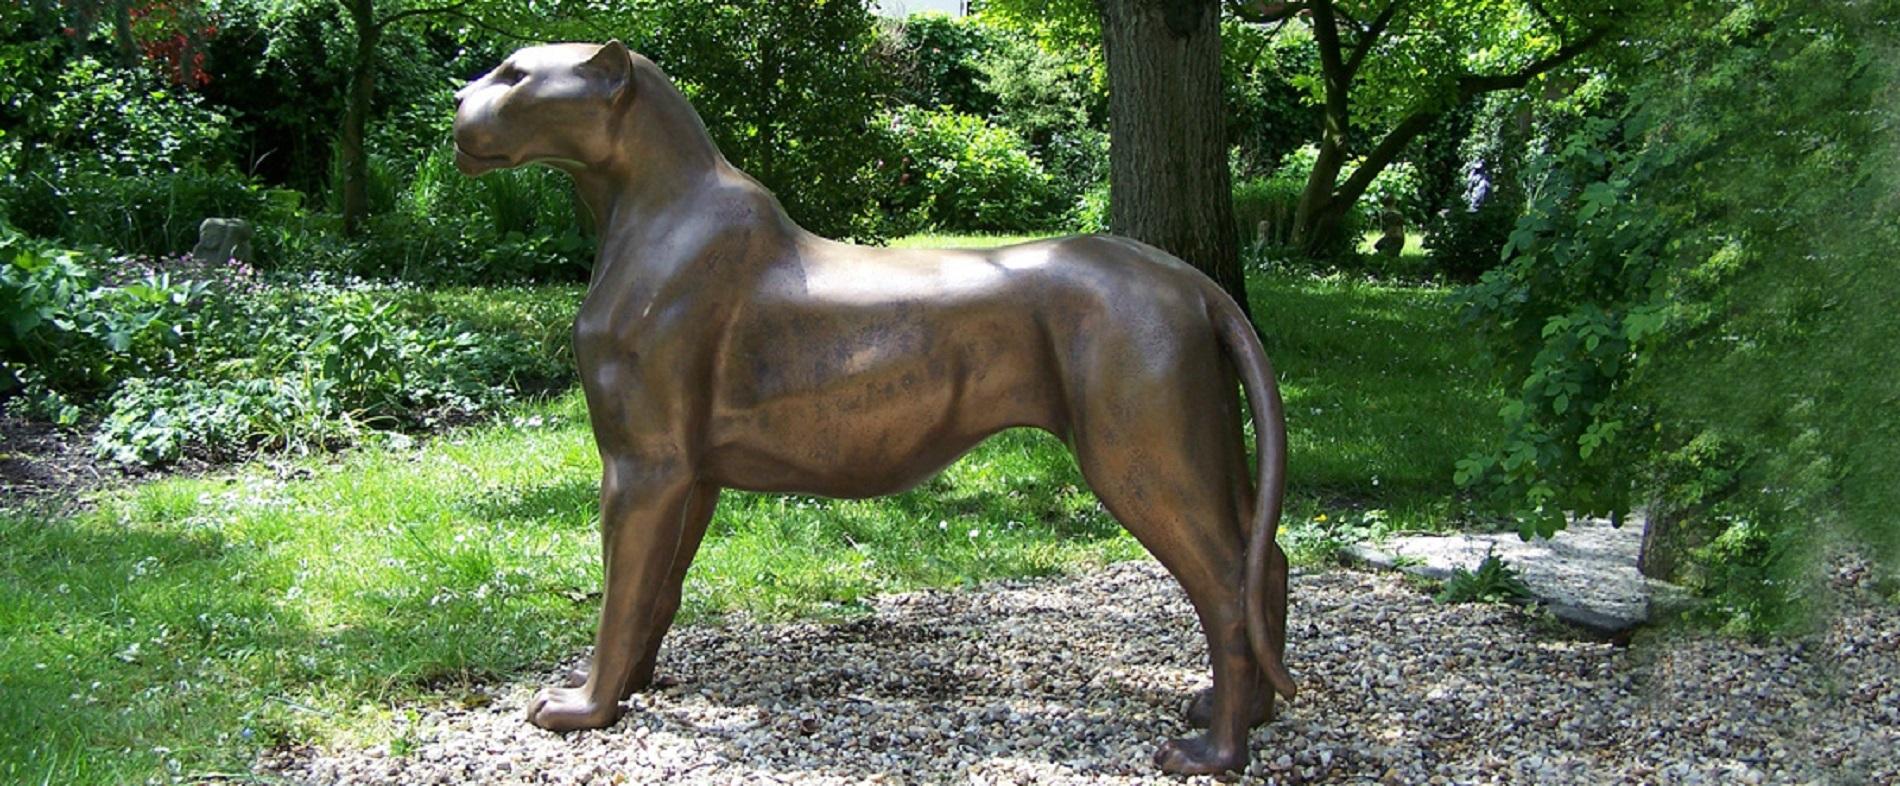 Jaguar debout Sculpture en bronze Animal sauvage Réalisme Contemporary
Chris Tap (1973, Amsterdam) a étudié l'économie et l'anthropologie culturelle à l'université avant de devenir sculpteur à plein temps. Au cours des 12 dernières années, il a